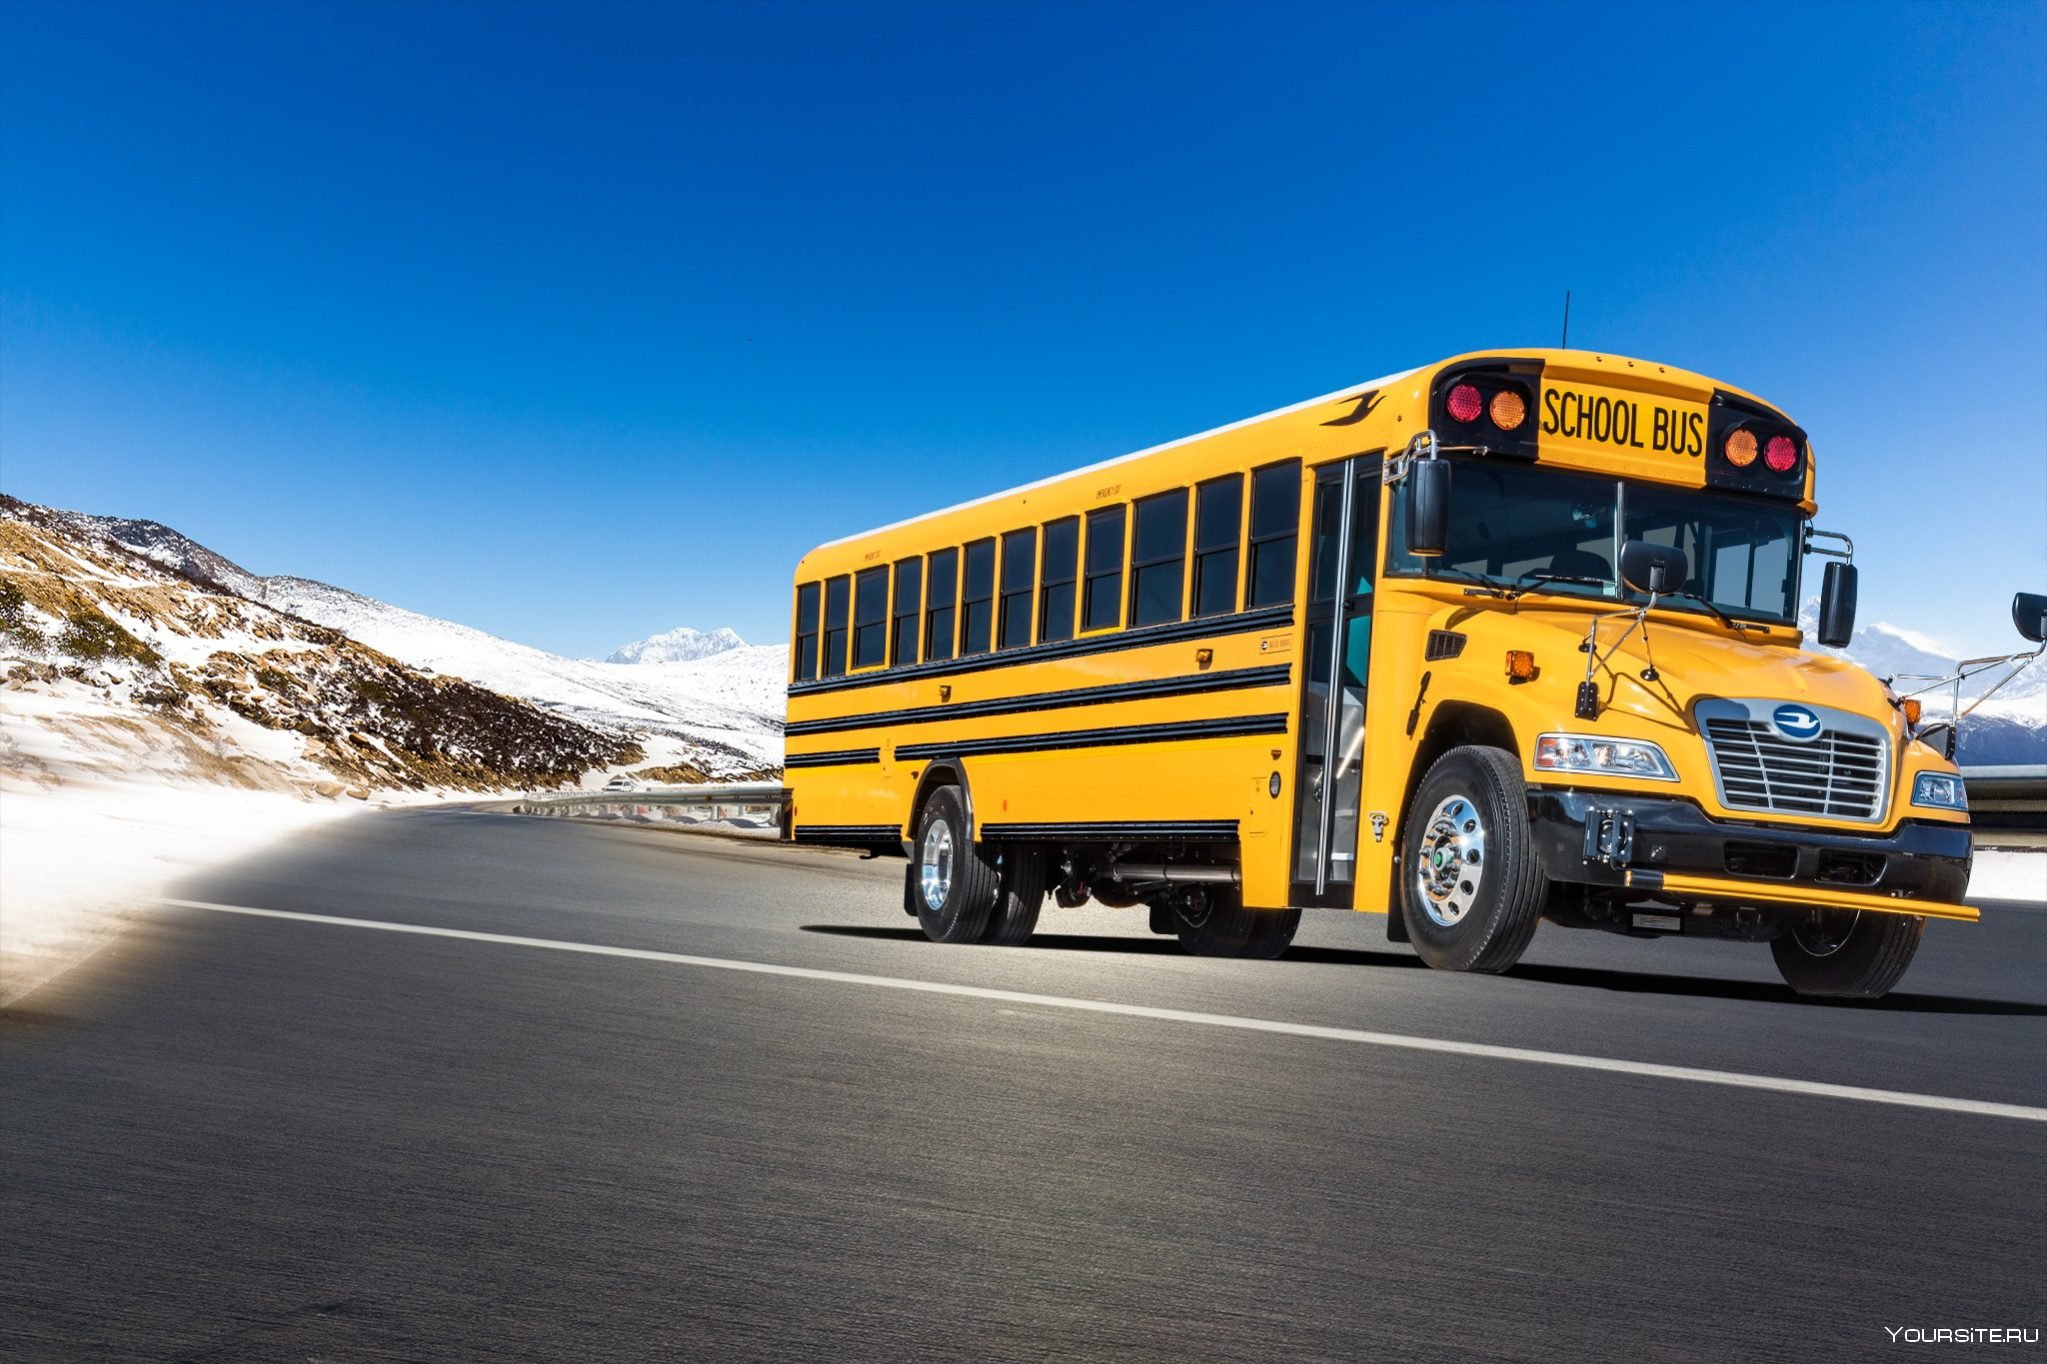 Включи машина автобус. Машины автобусы. Школьный автобус. Школьный автобус Тачки. Автобус и автомобиль.